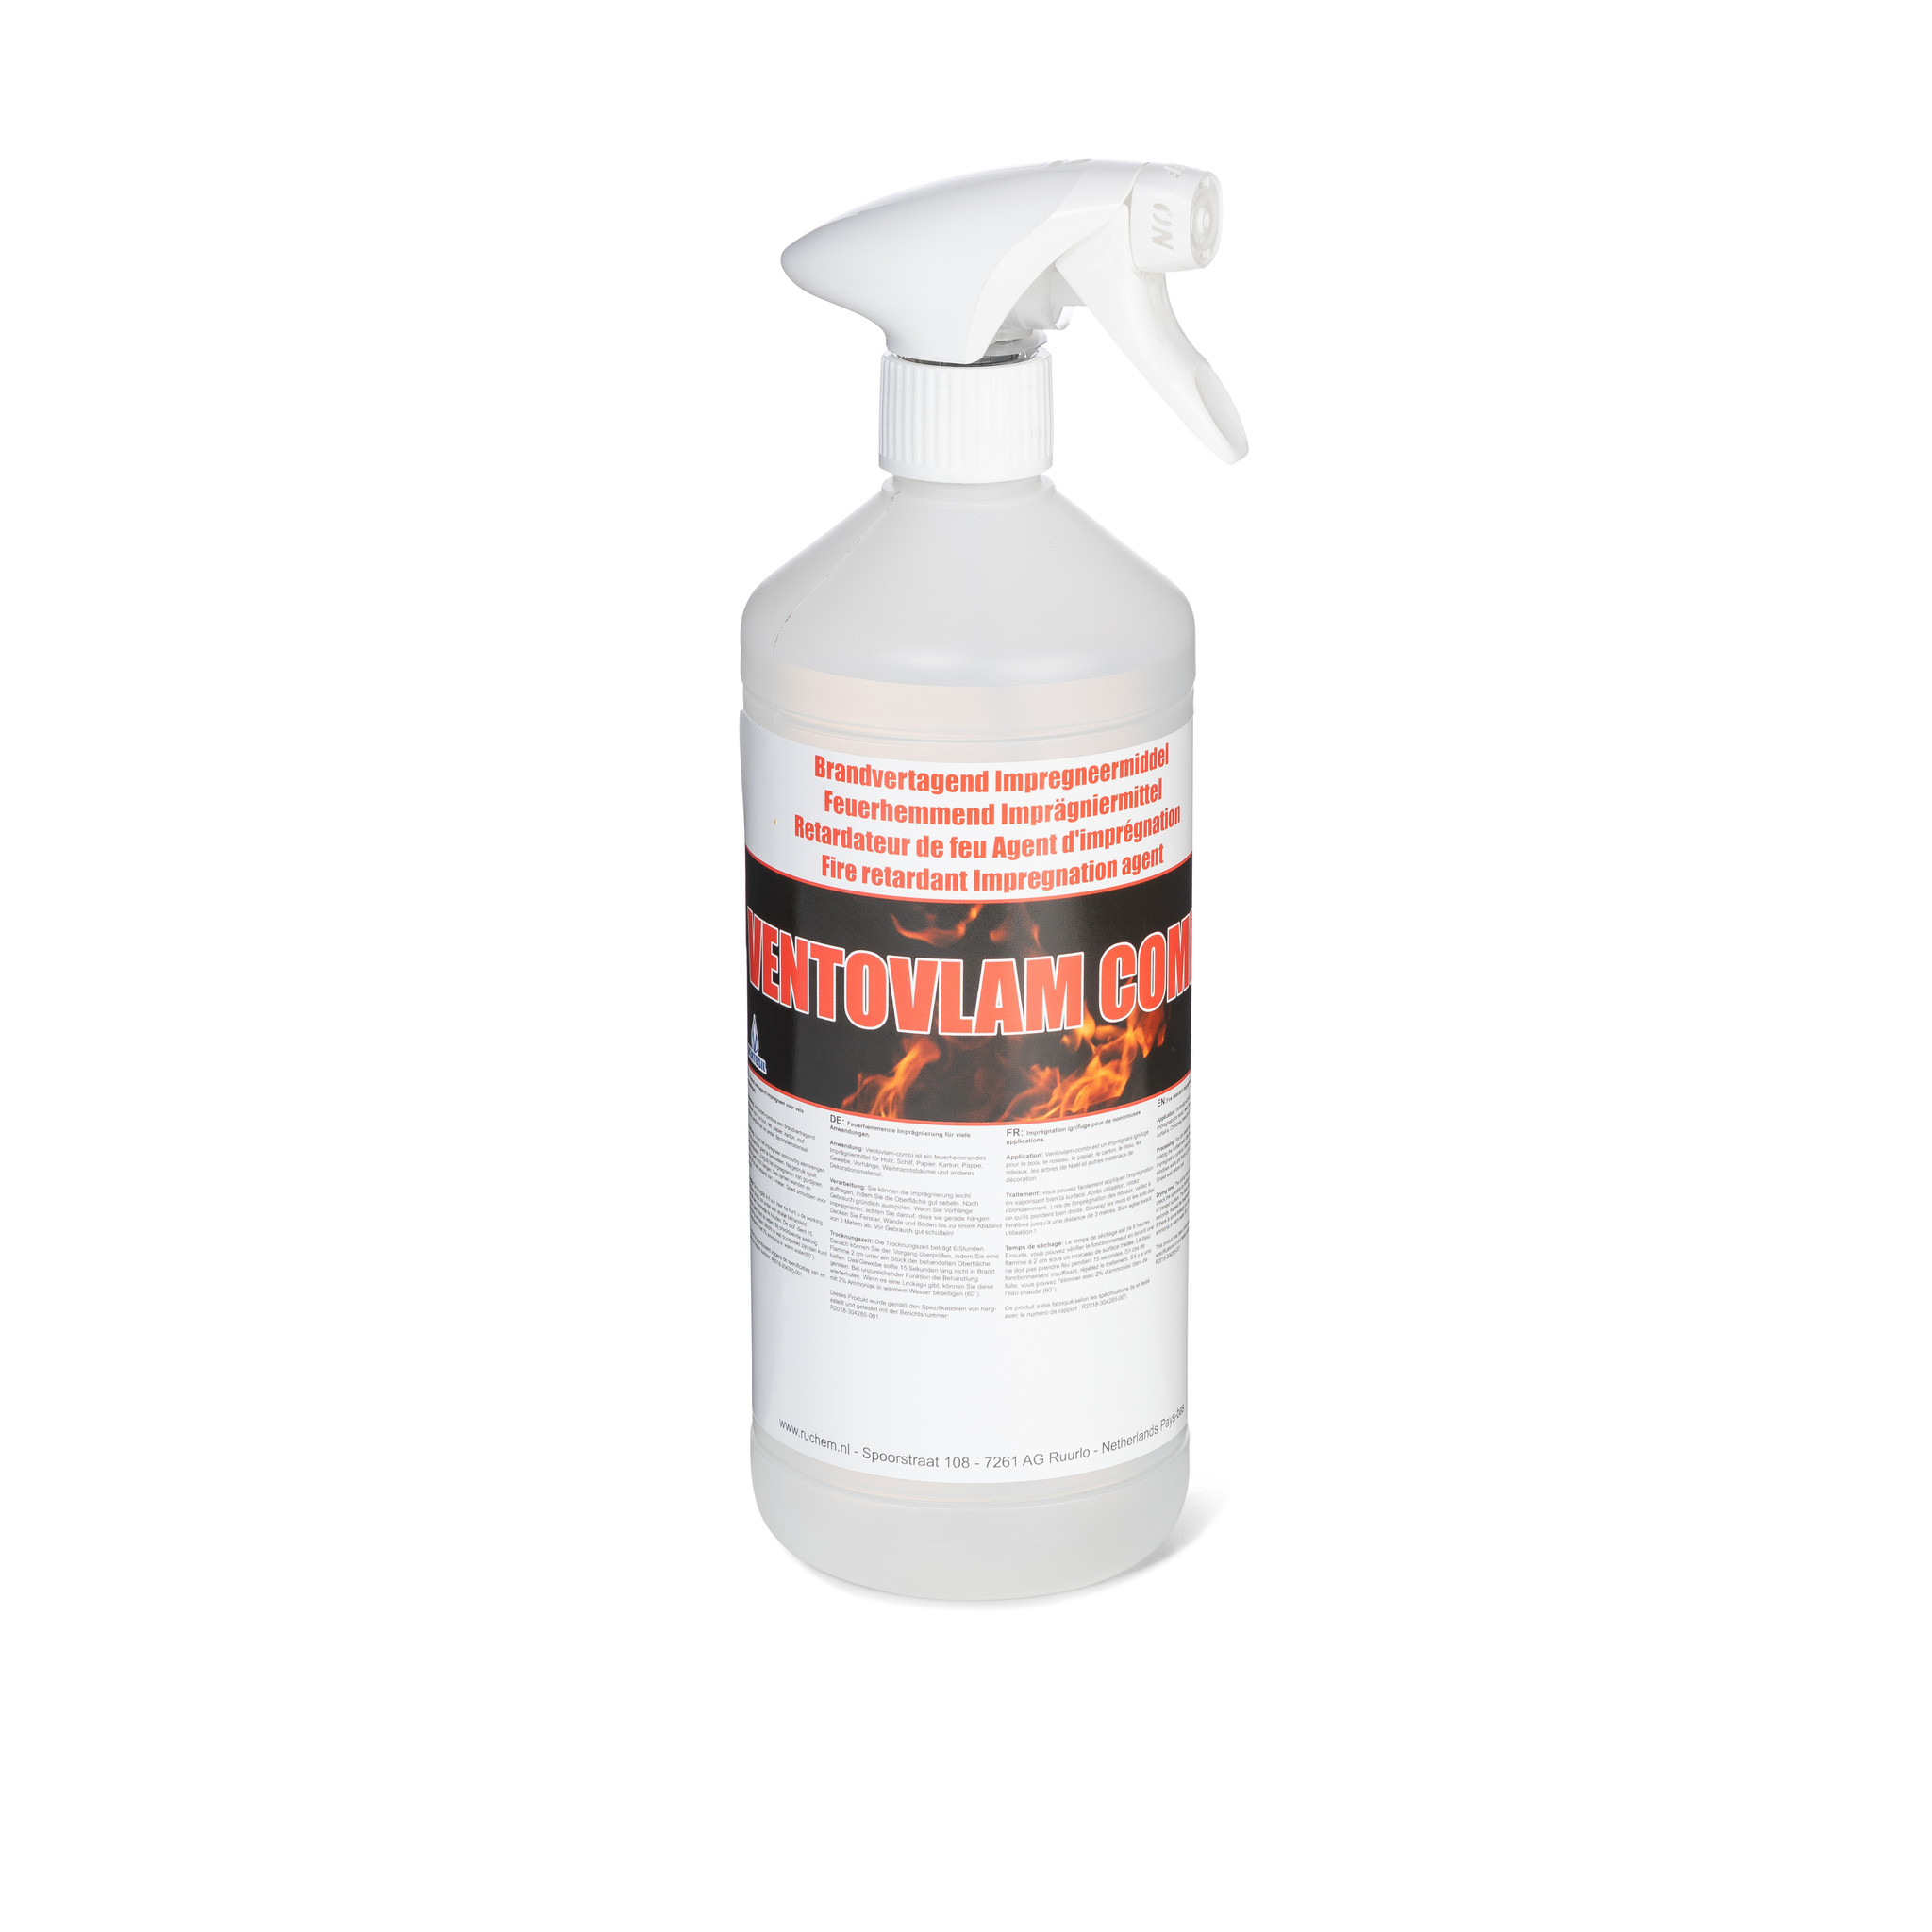 Combi -  Brandvertragende Spray - 1 jaar werking!